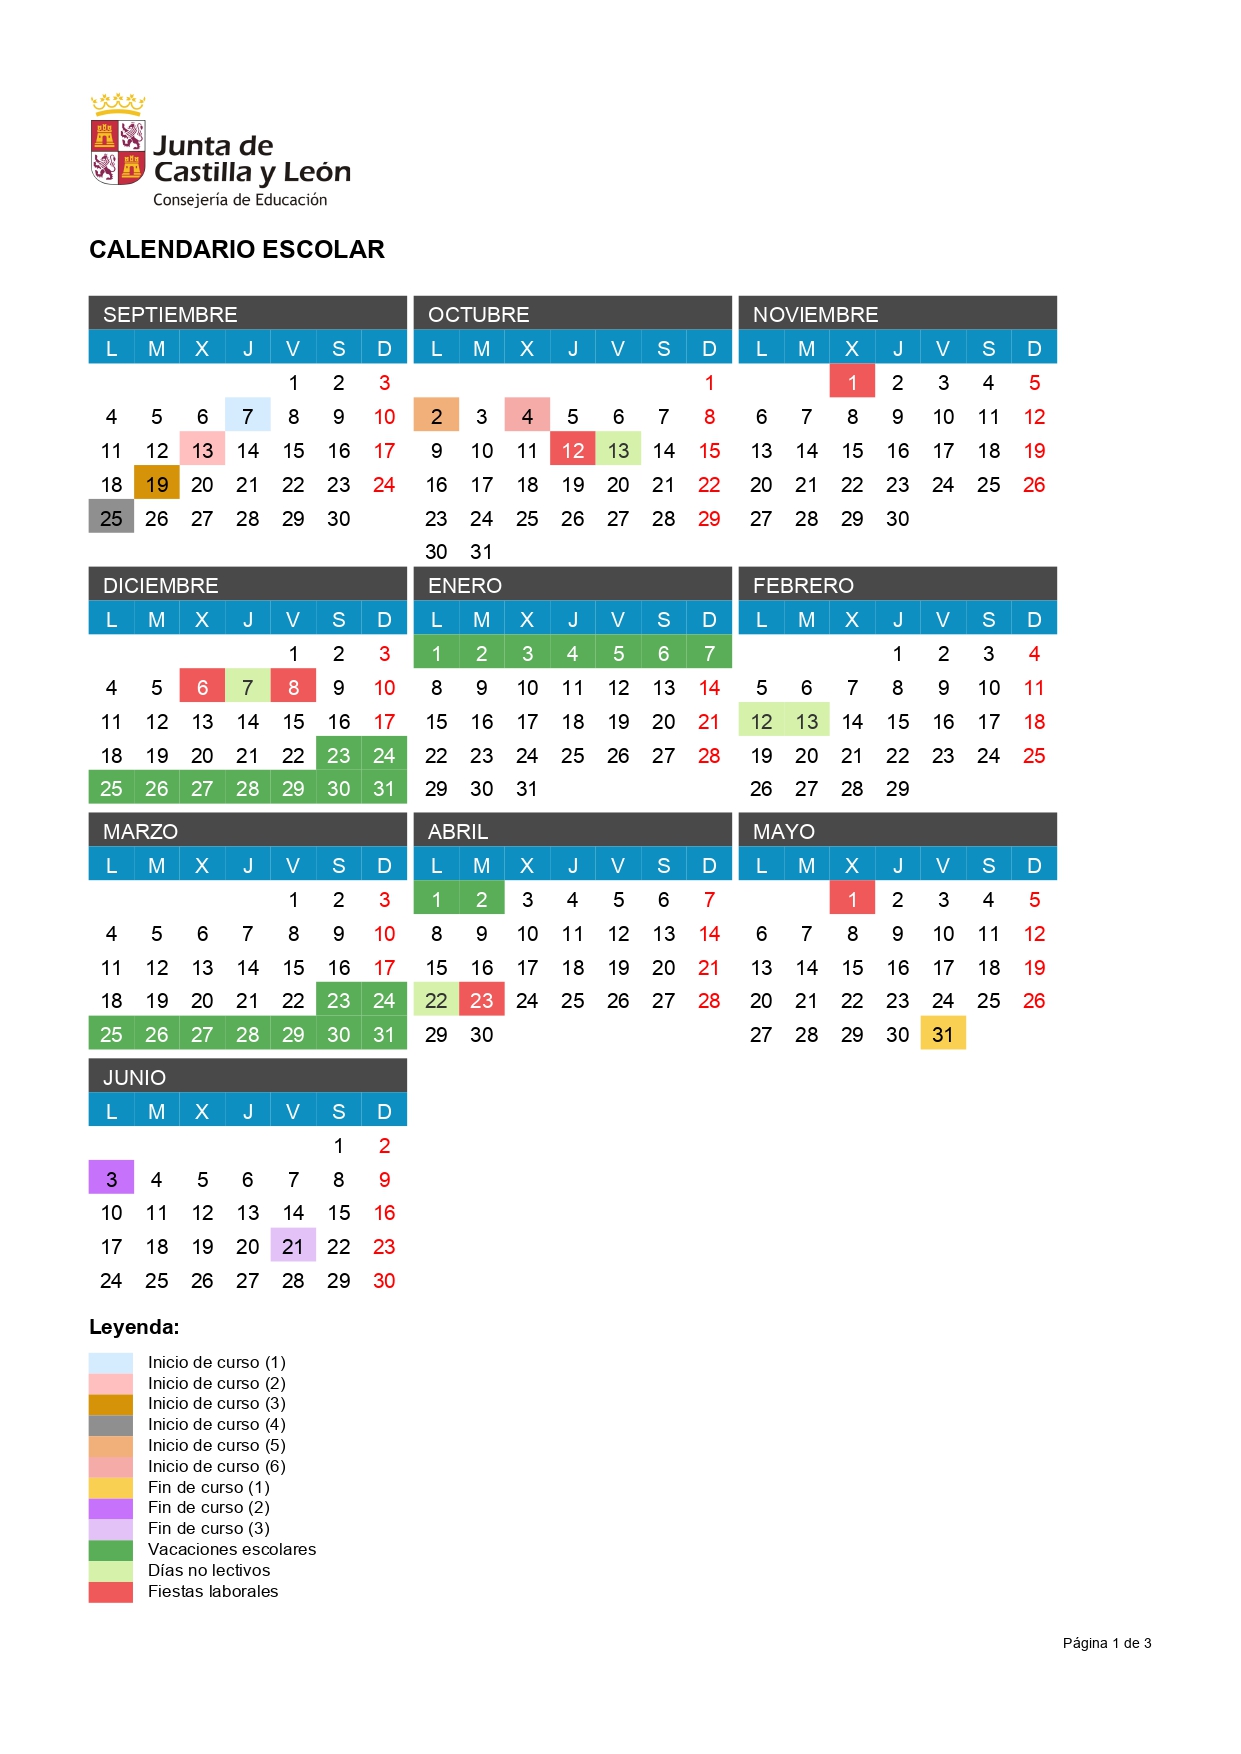 Calendario Escolar 2023/2024